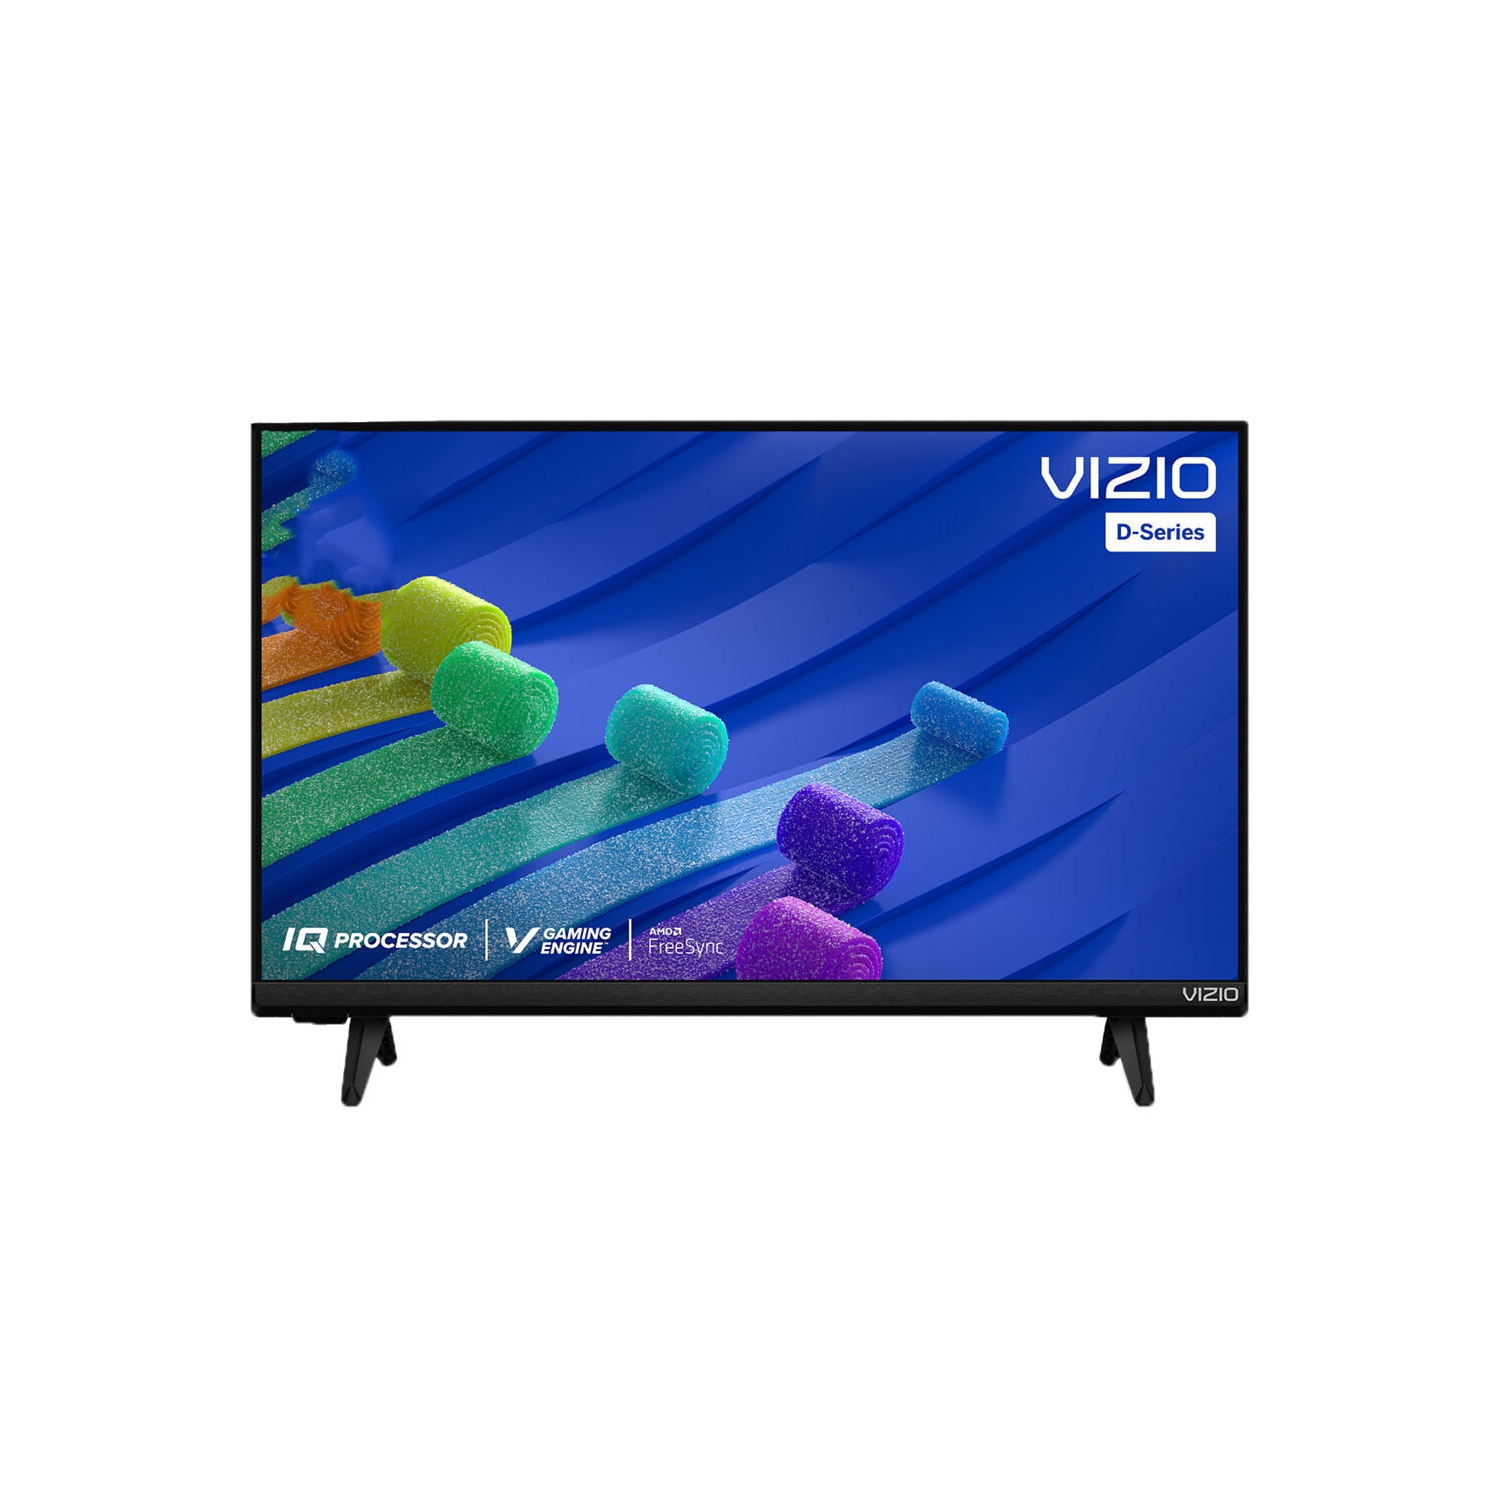 REFURBISHED (GOOD) - VIZIO D-Series 24" Class Full HD Smart LED TV (D24F4-J01)